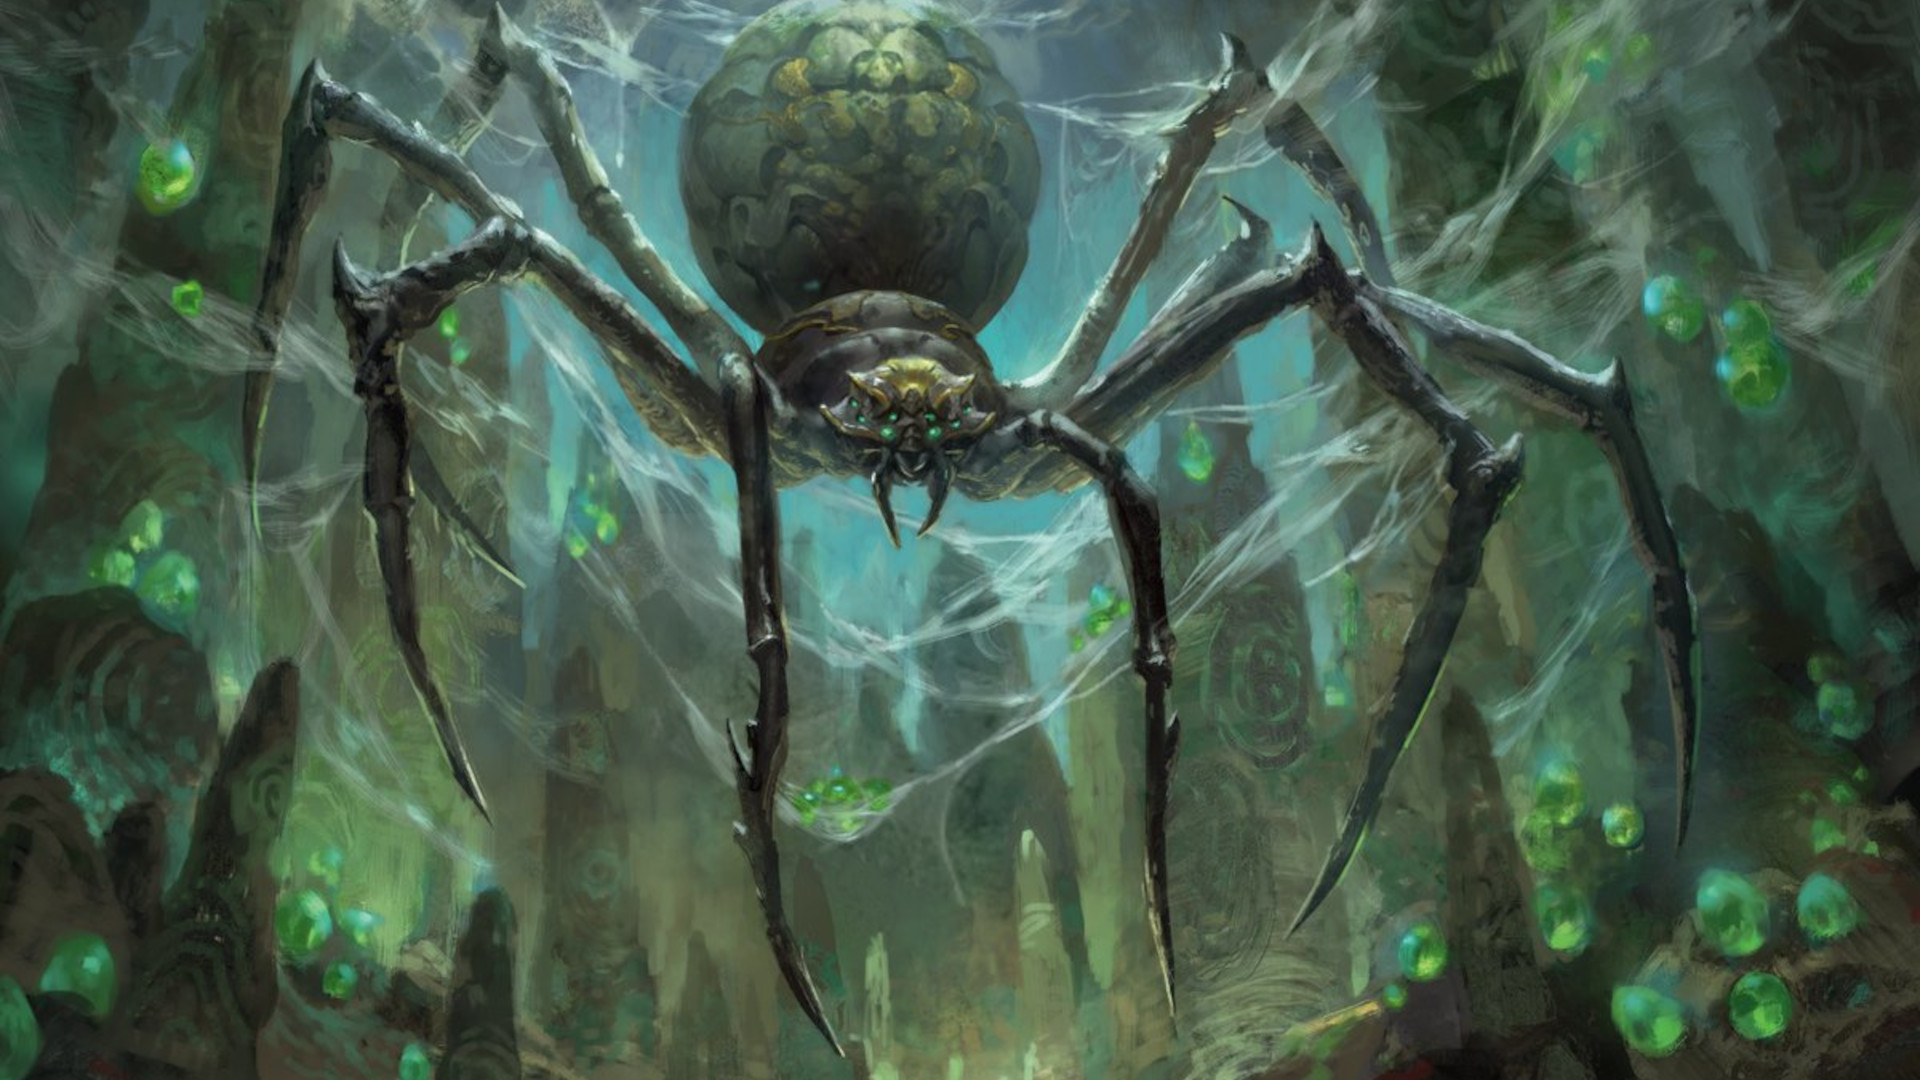 DnD-poisoned-5e-guide-giant-spider.jpg